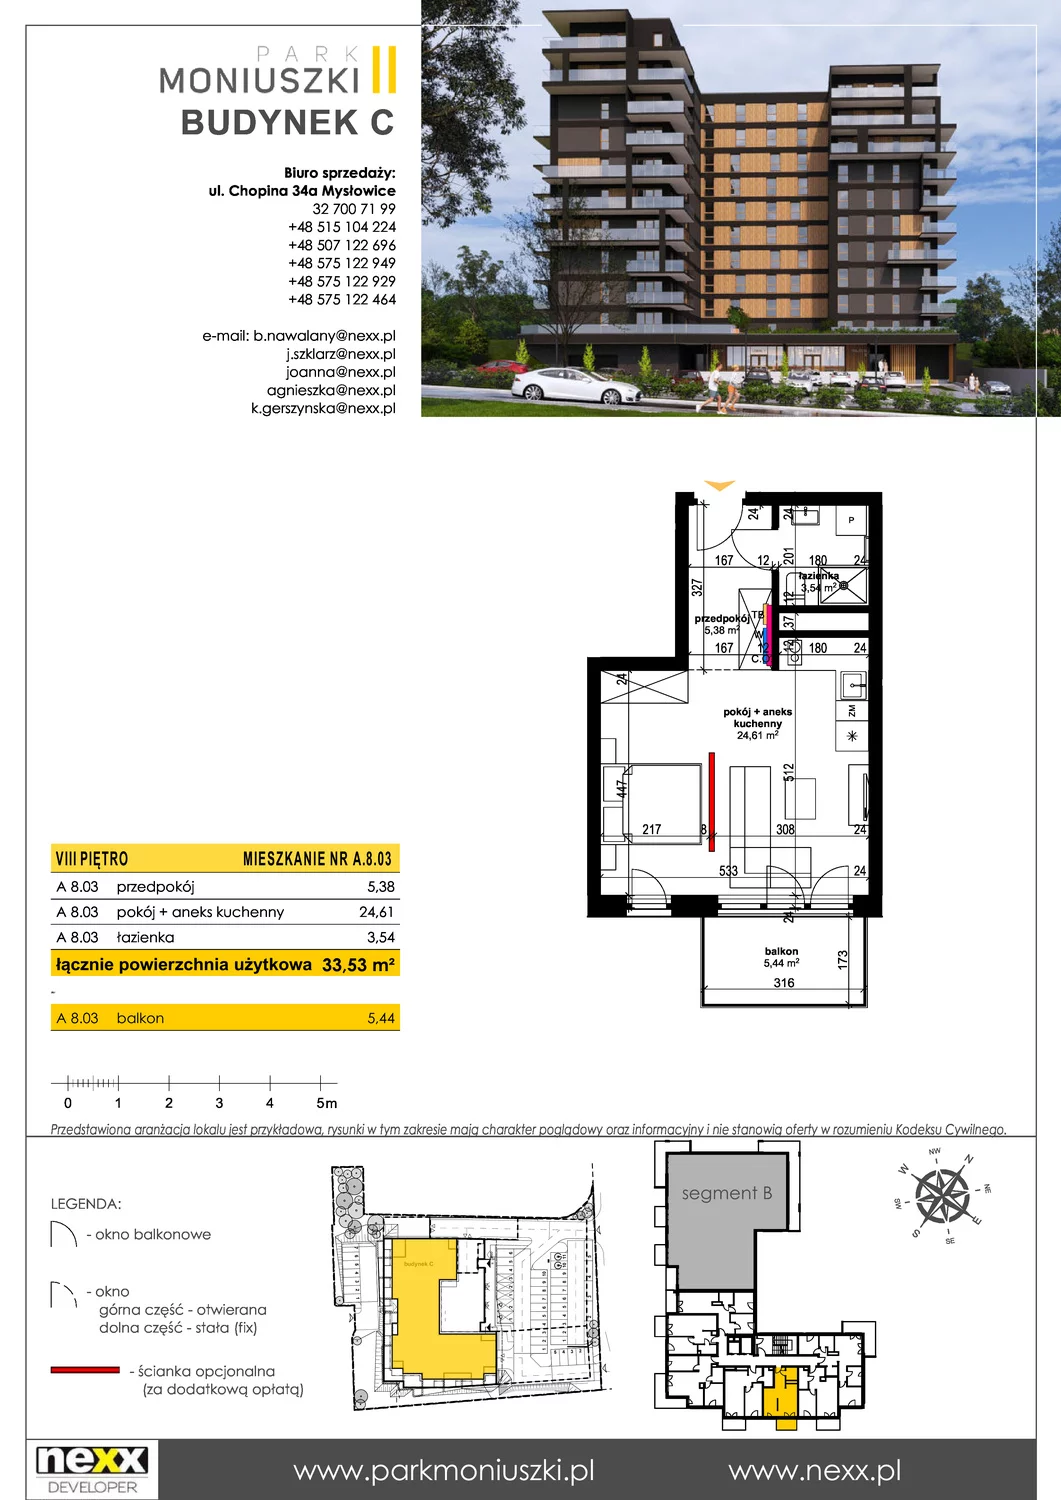 Mieszkanie 33,53 m², piętro 8, oferta nr A 8.03, Osiedle Park Moniuszki, Mysłowice, ul. Okrzei / Wielka Skotnica